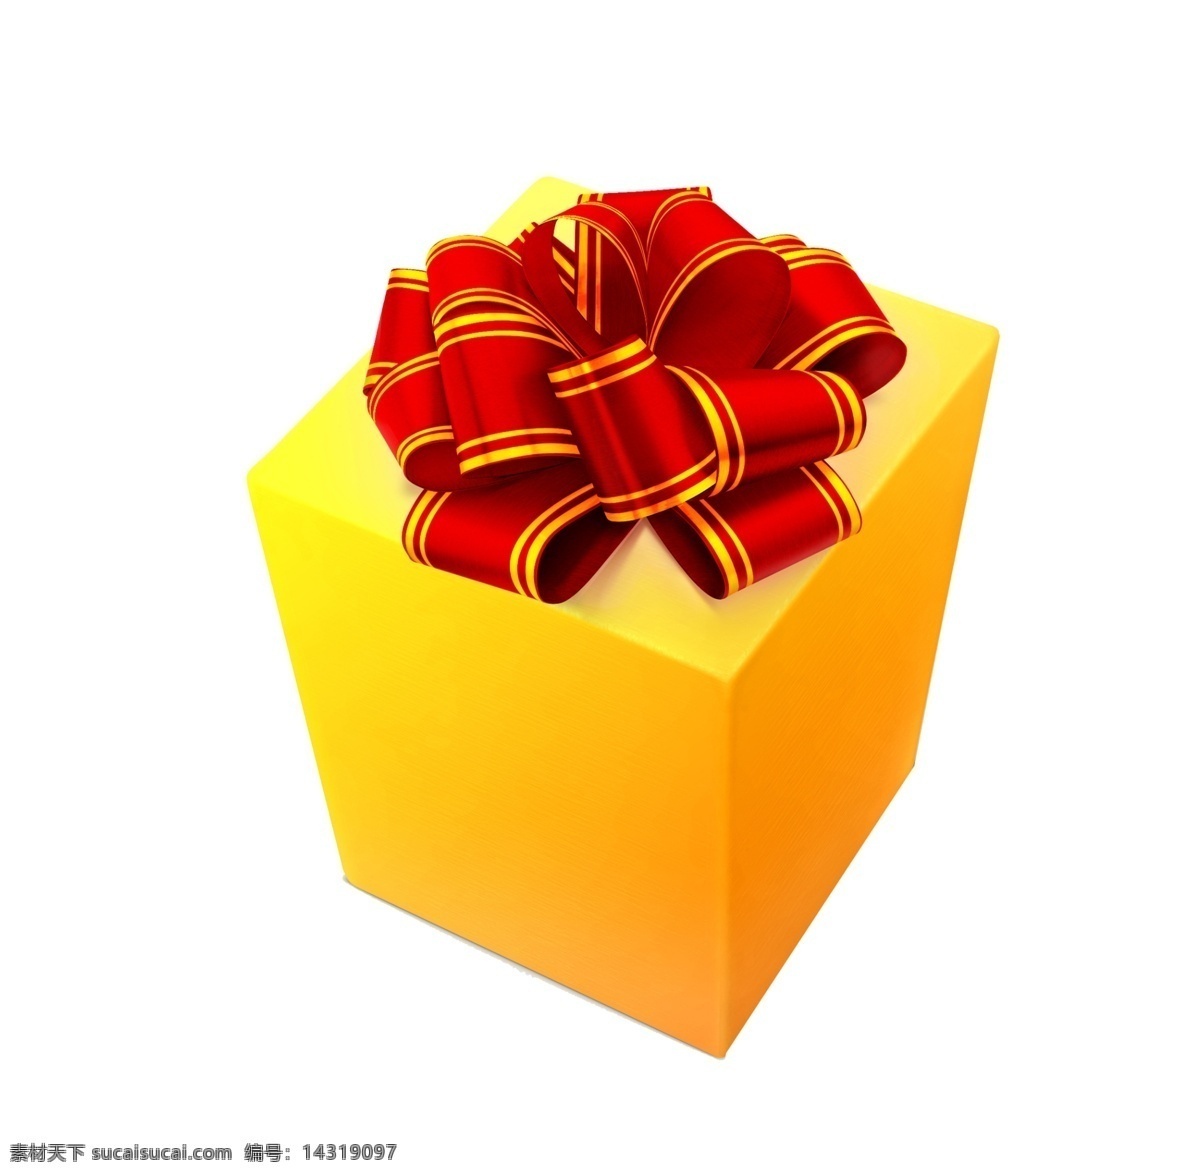 金色 矢量 礼盒 圣诞 圣诞礼盒 精美礼盒 圣诞礼品 圣诞素材